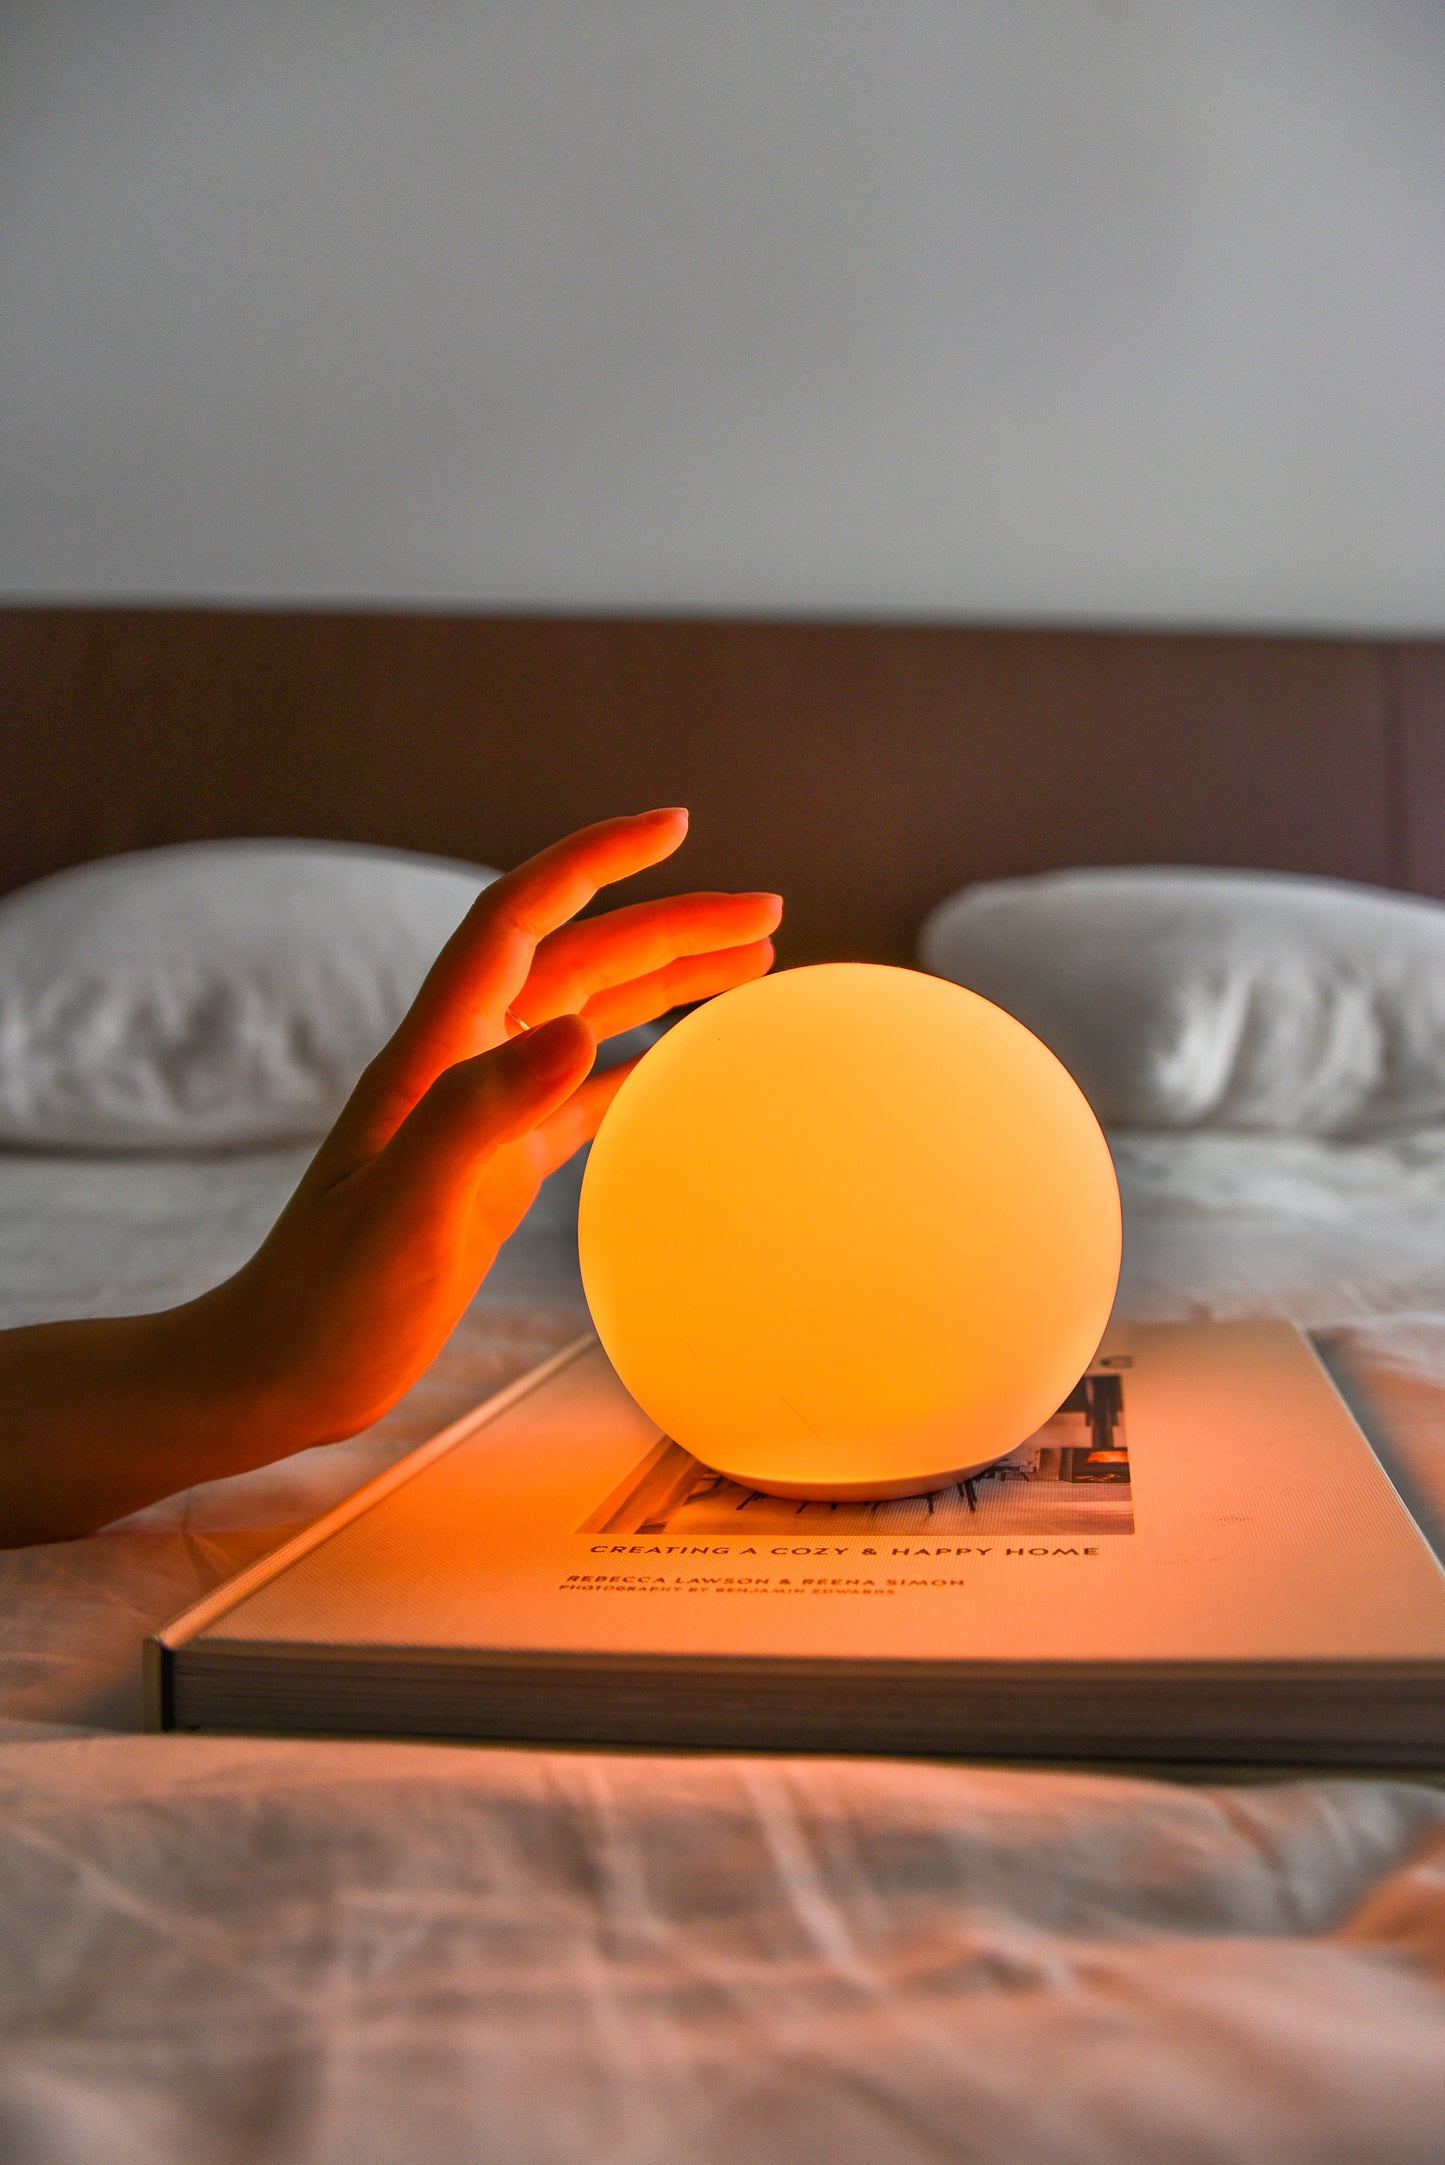 Une main s'apprêtant à toucher une Sensolight de couleur orange sur un lit.